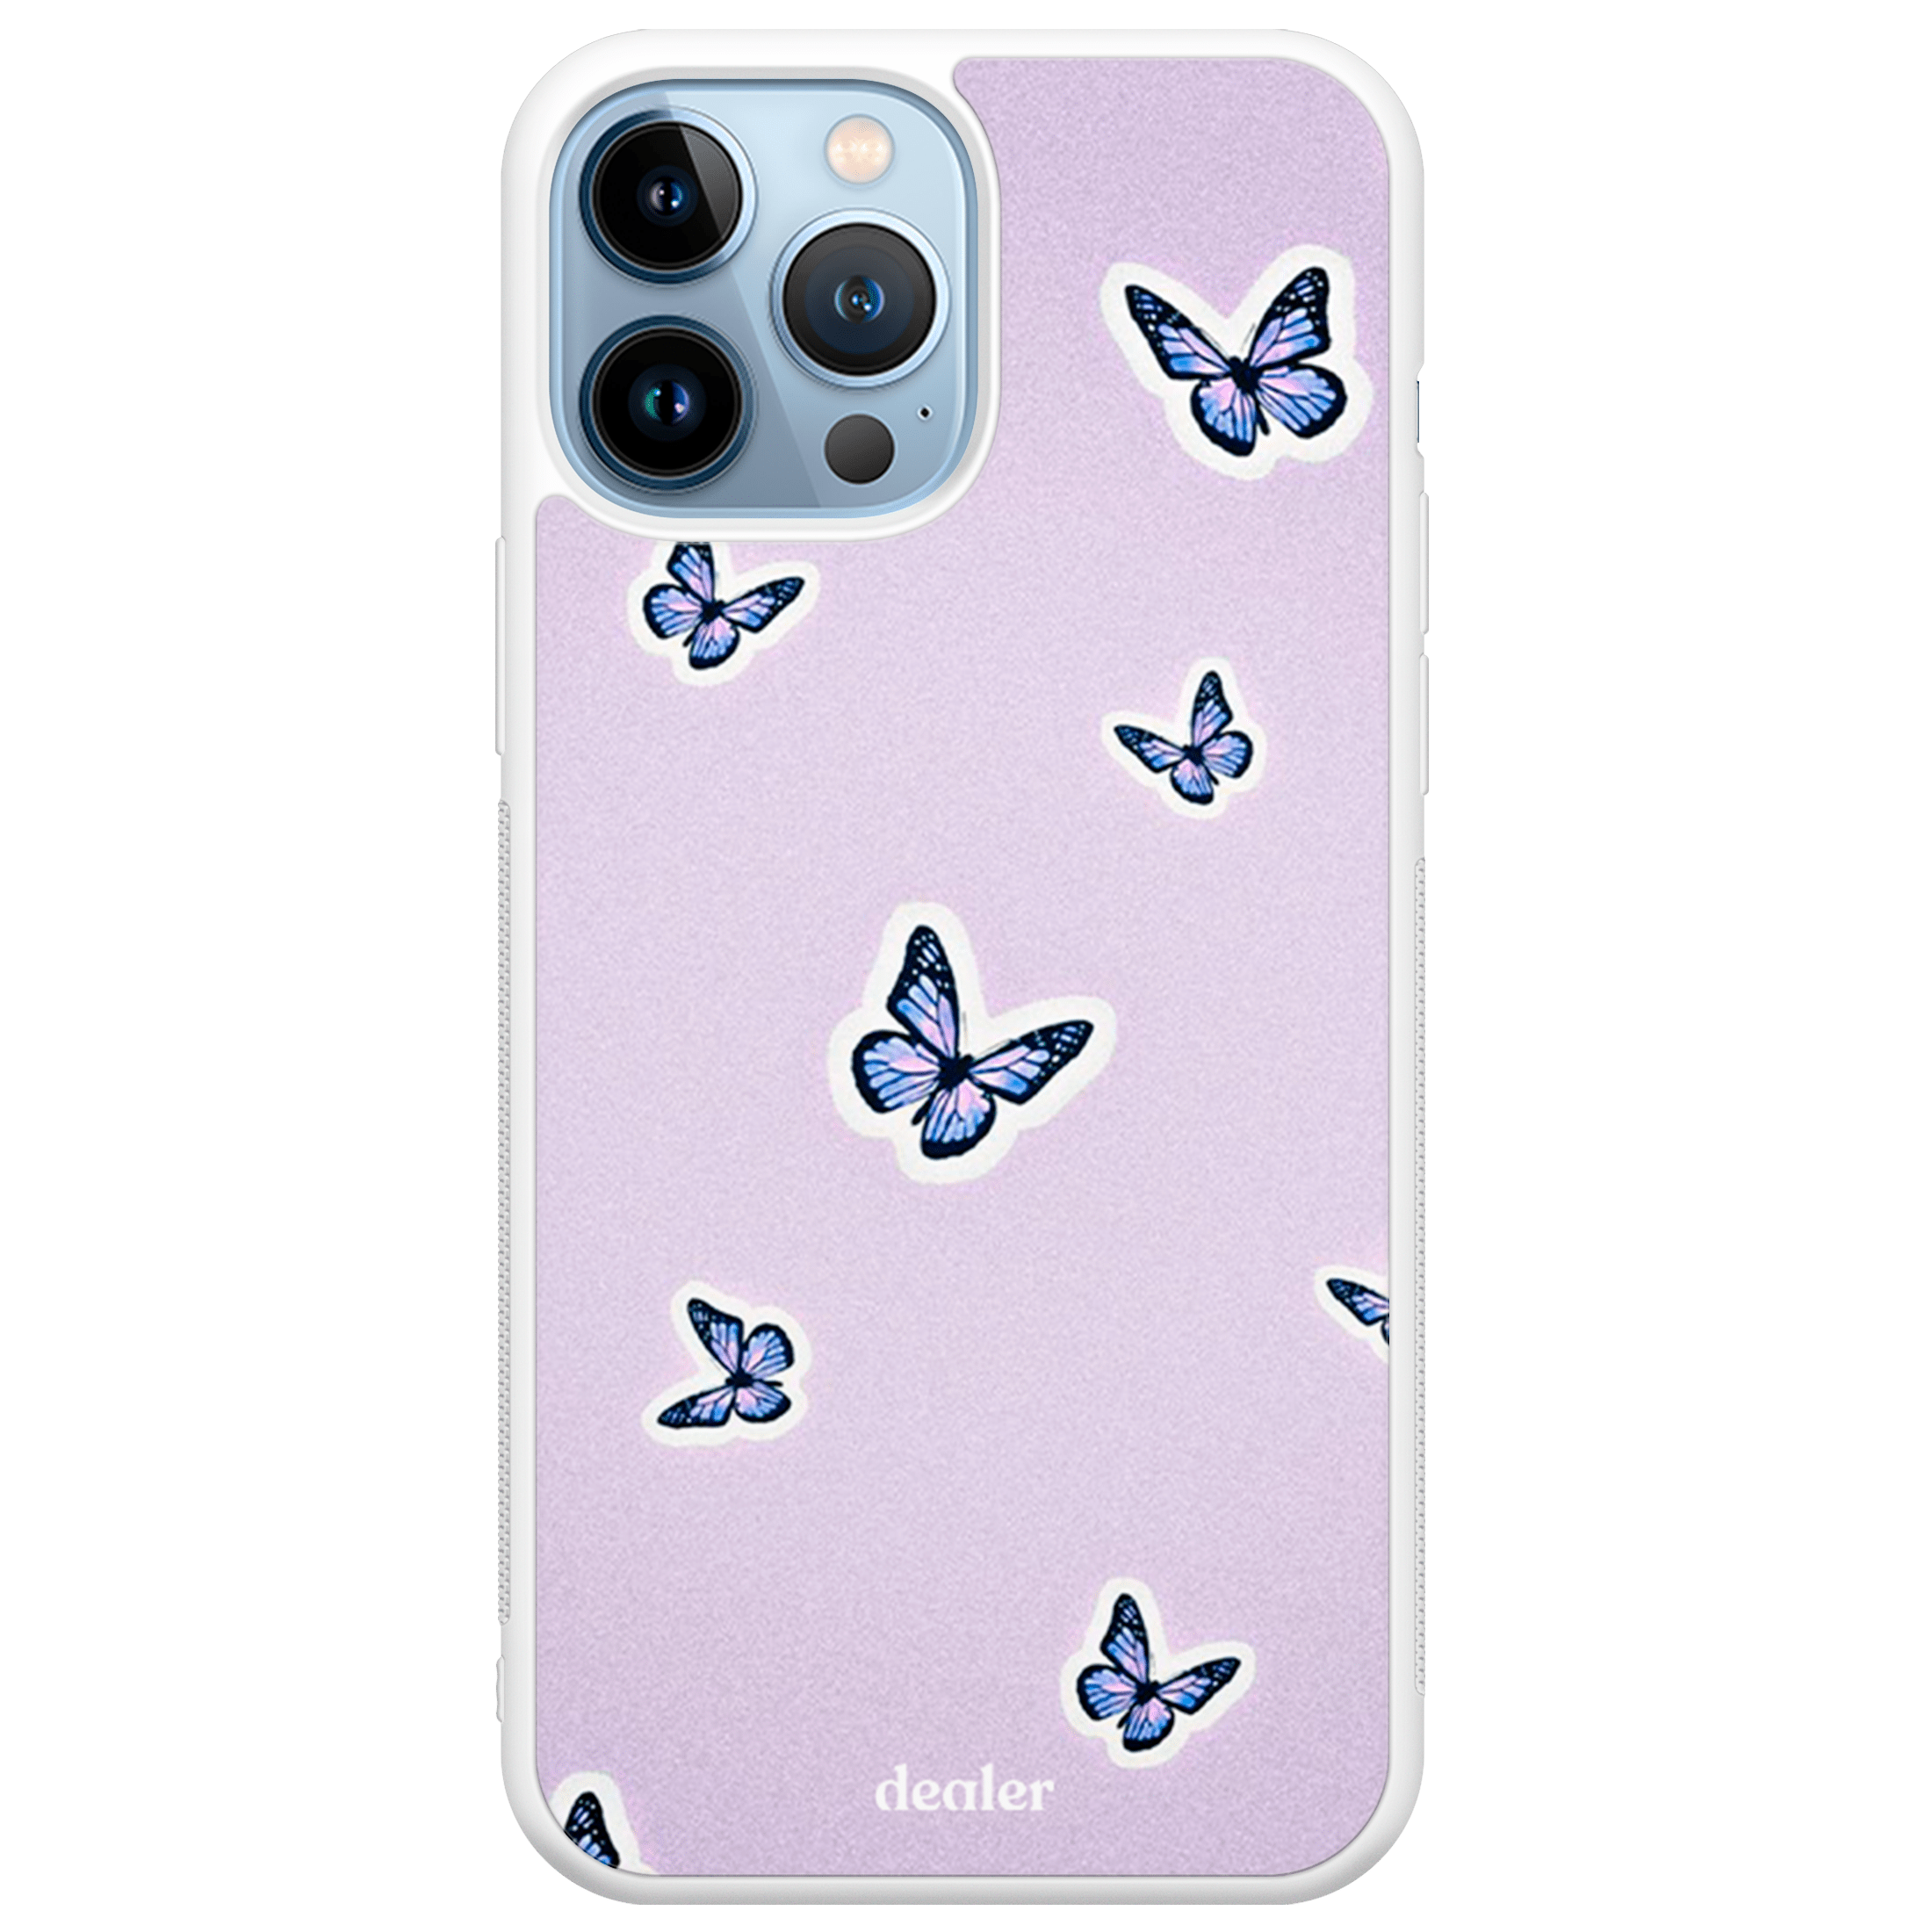 Coque de téléphone avec des papillons violets, coque papillon en silicone renforcé Dealer de coque